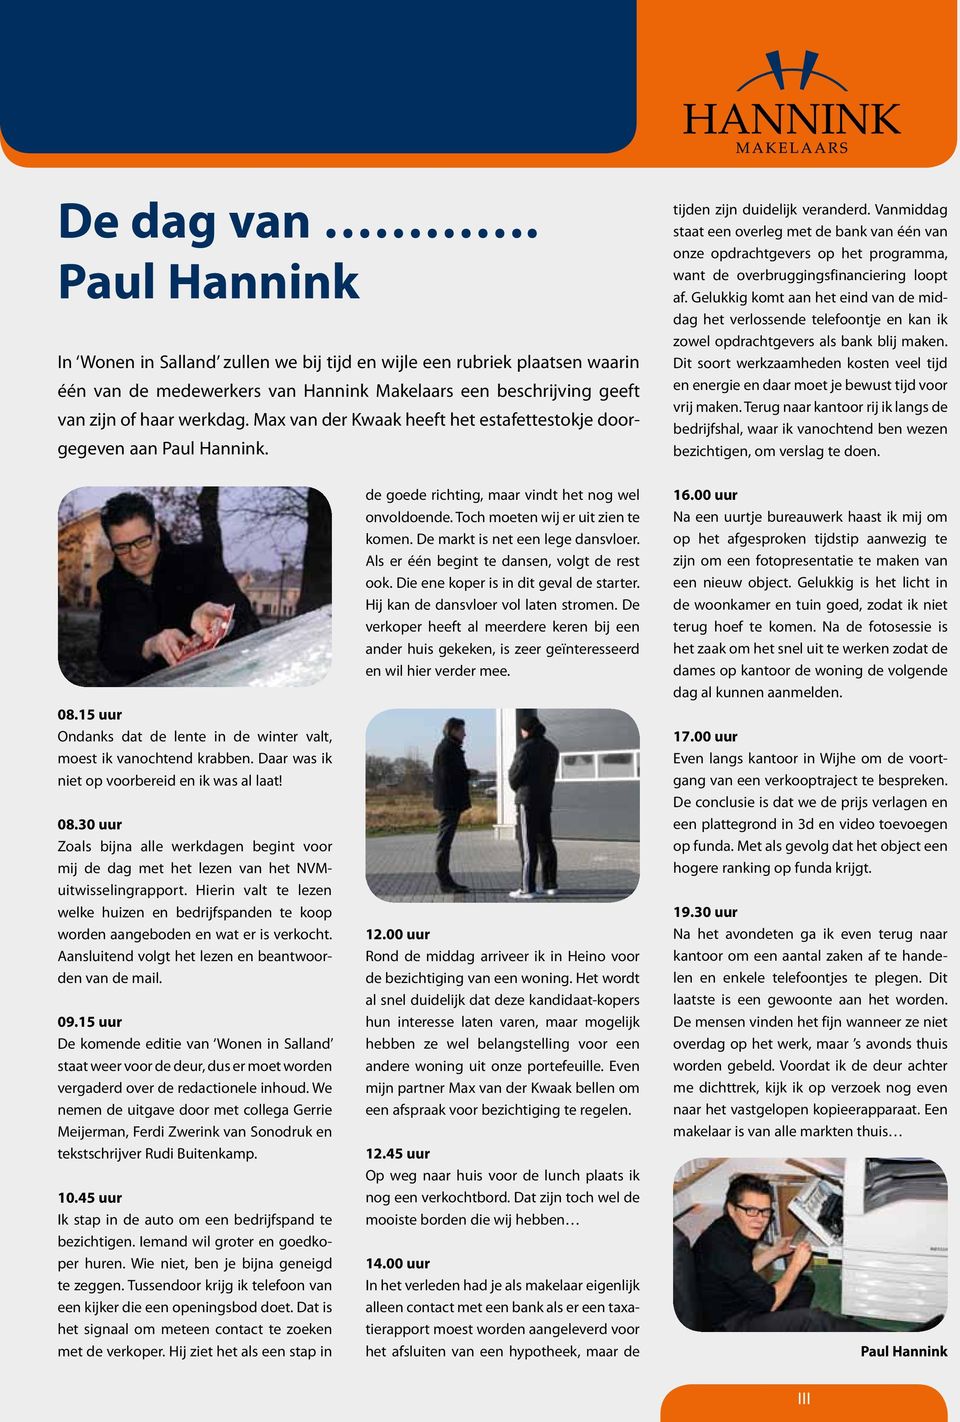 Max van der Kwaak heeft het estafettestokje doorgegeven aan Paul Hannink. tijden zijn duidelijk veranderd.